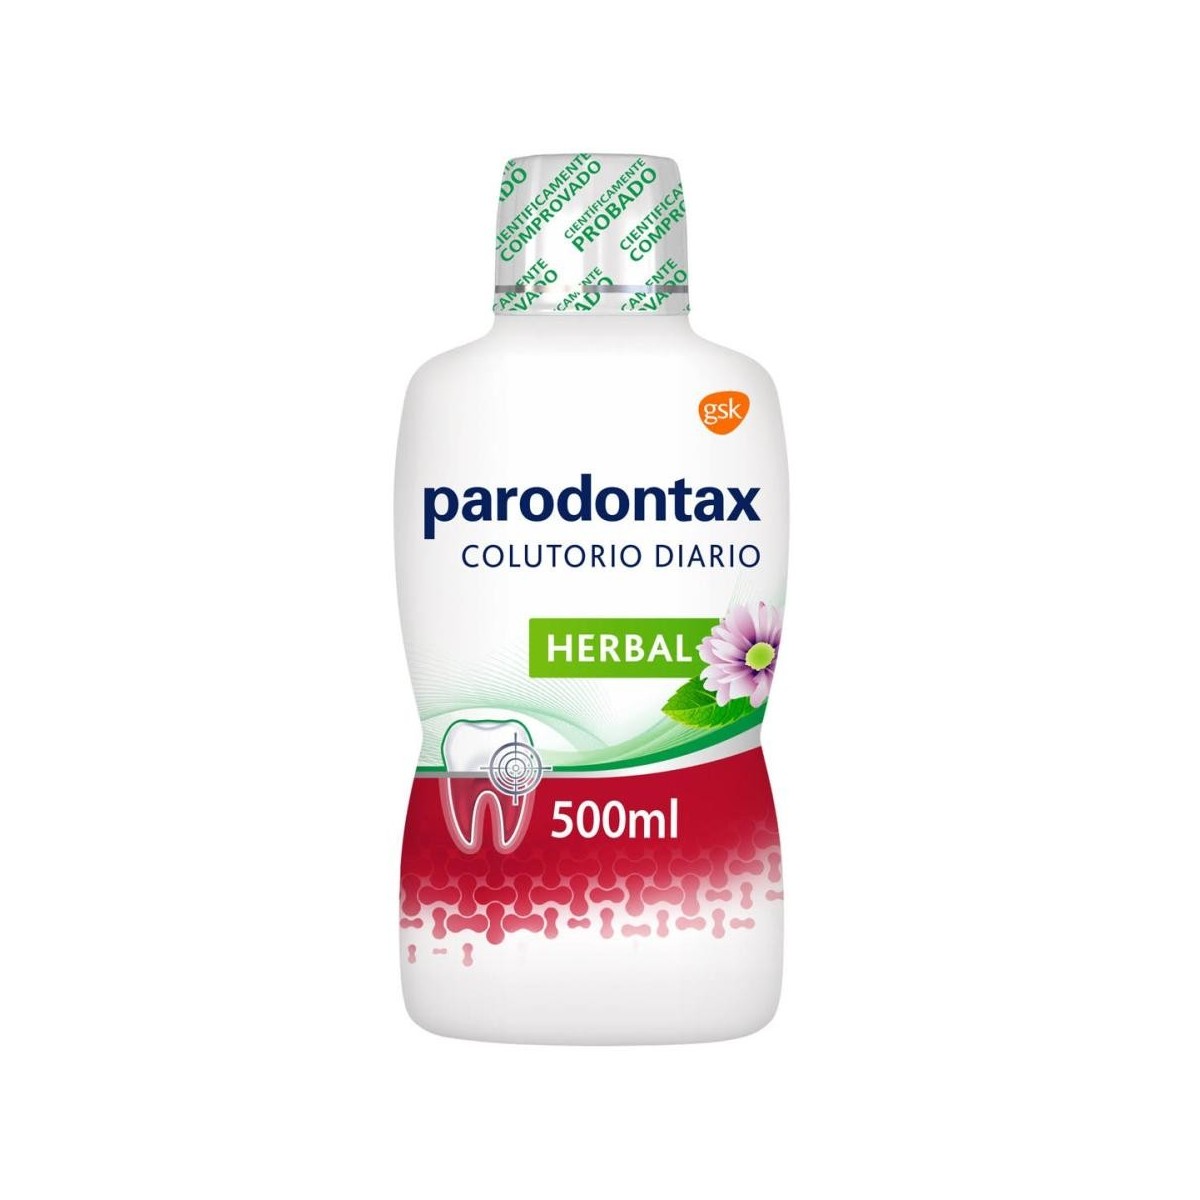 parodontax-colutorio-herbal-500-ml